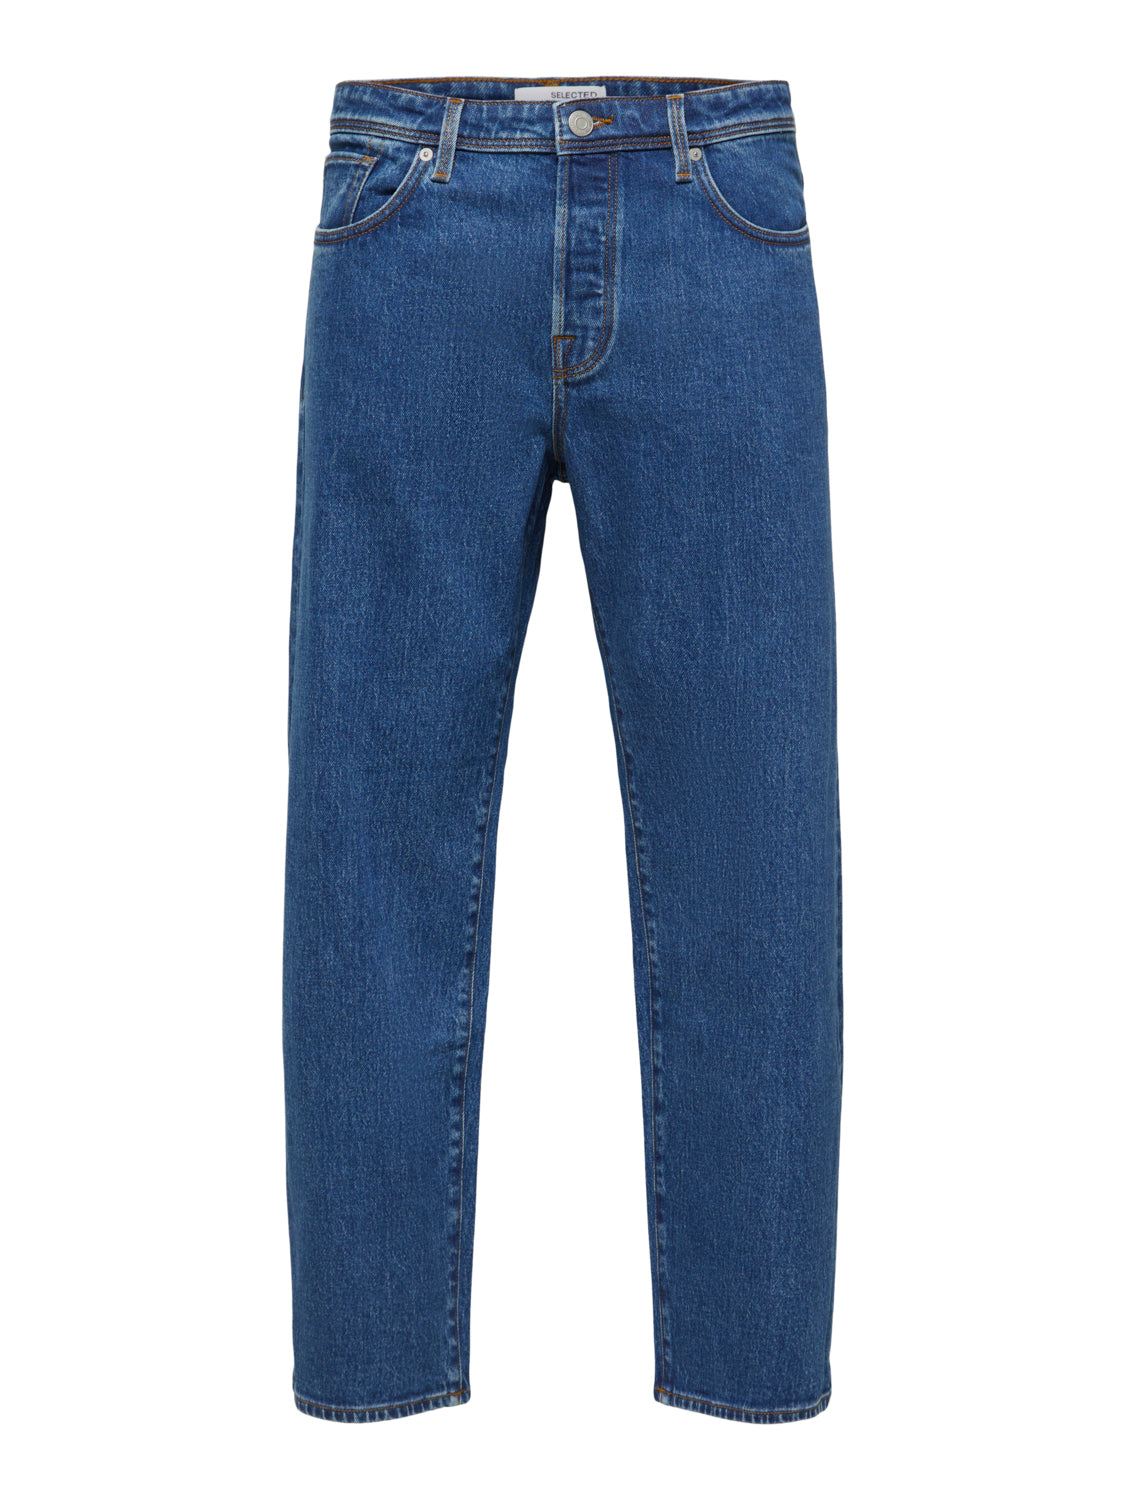 SLHLOOSE-KOBE Jeans - Medium Blue Denim